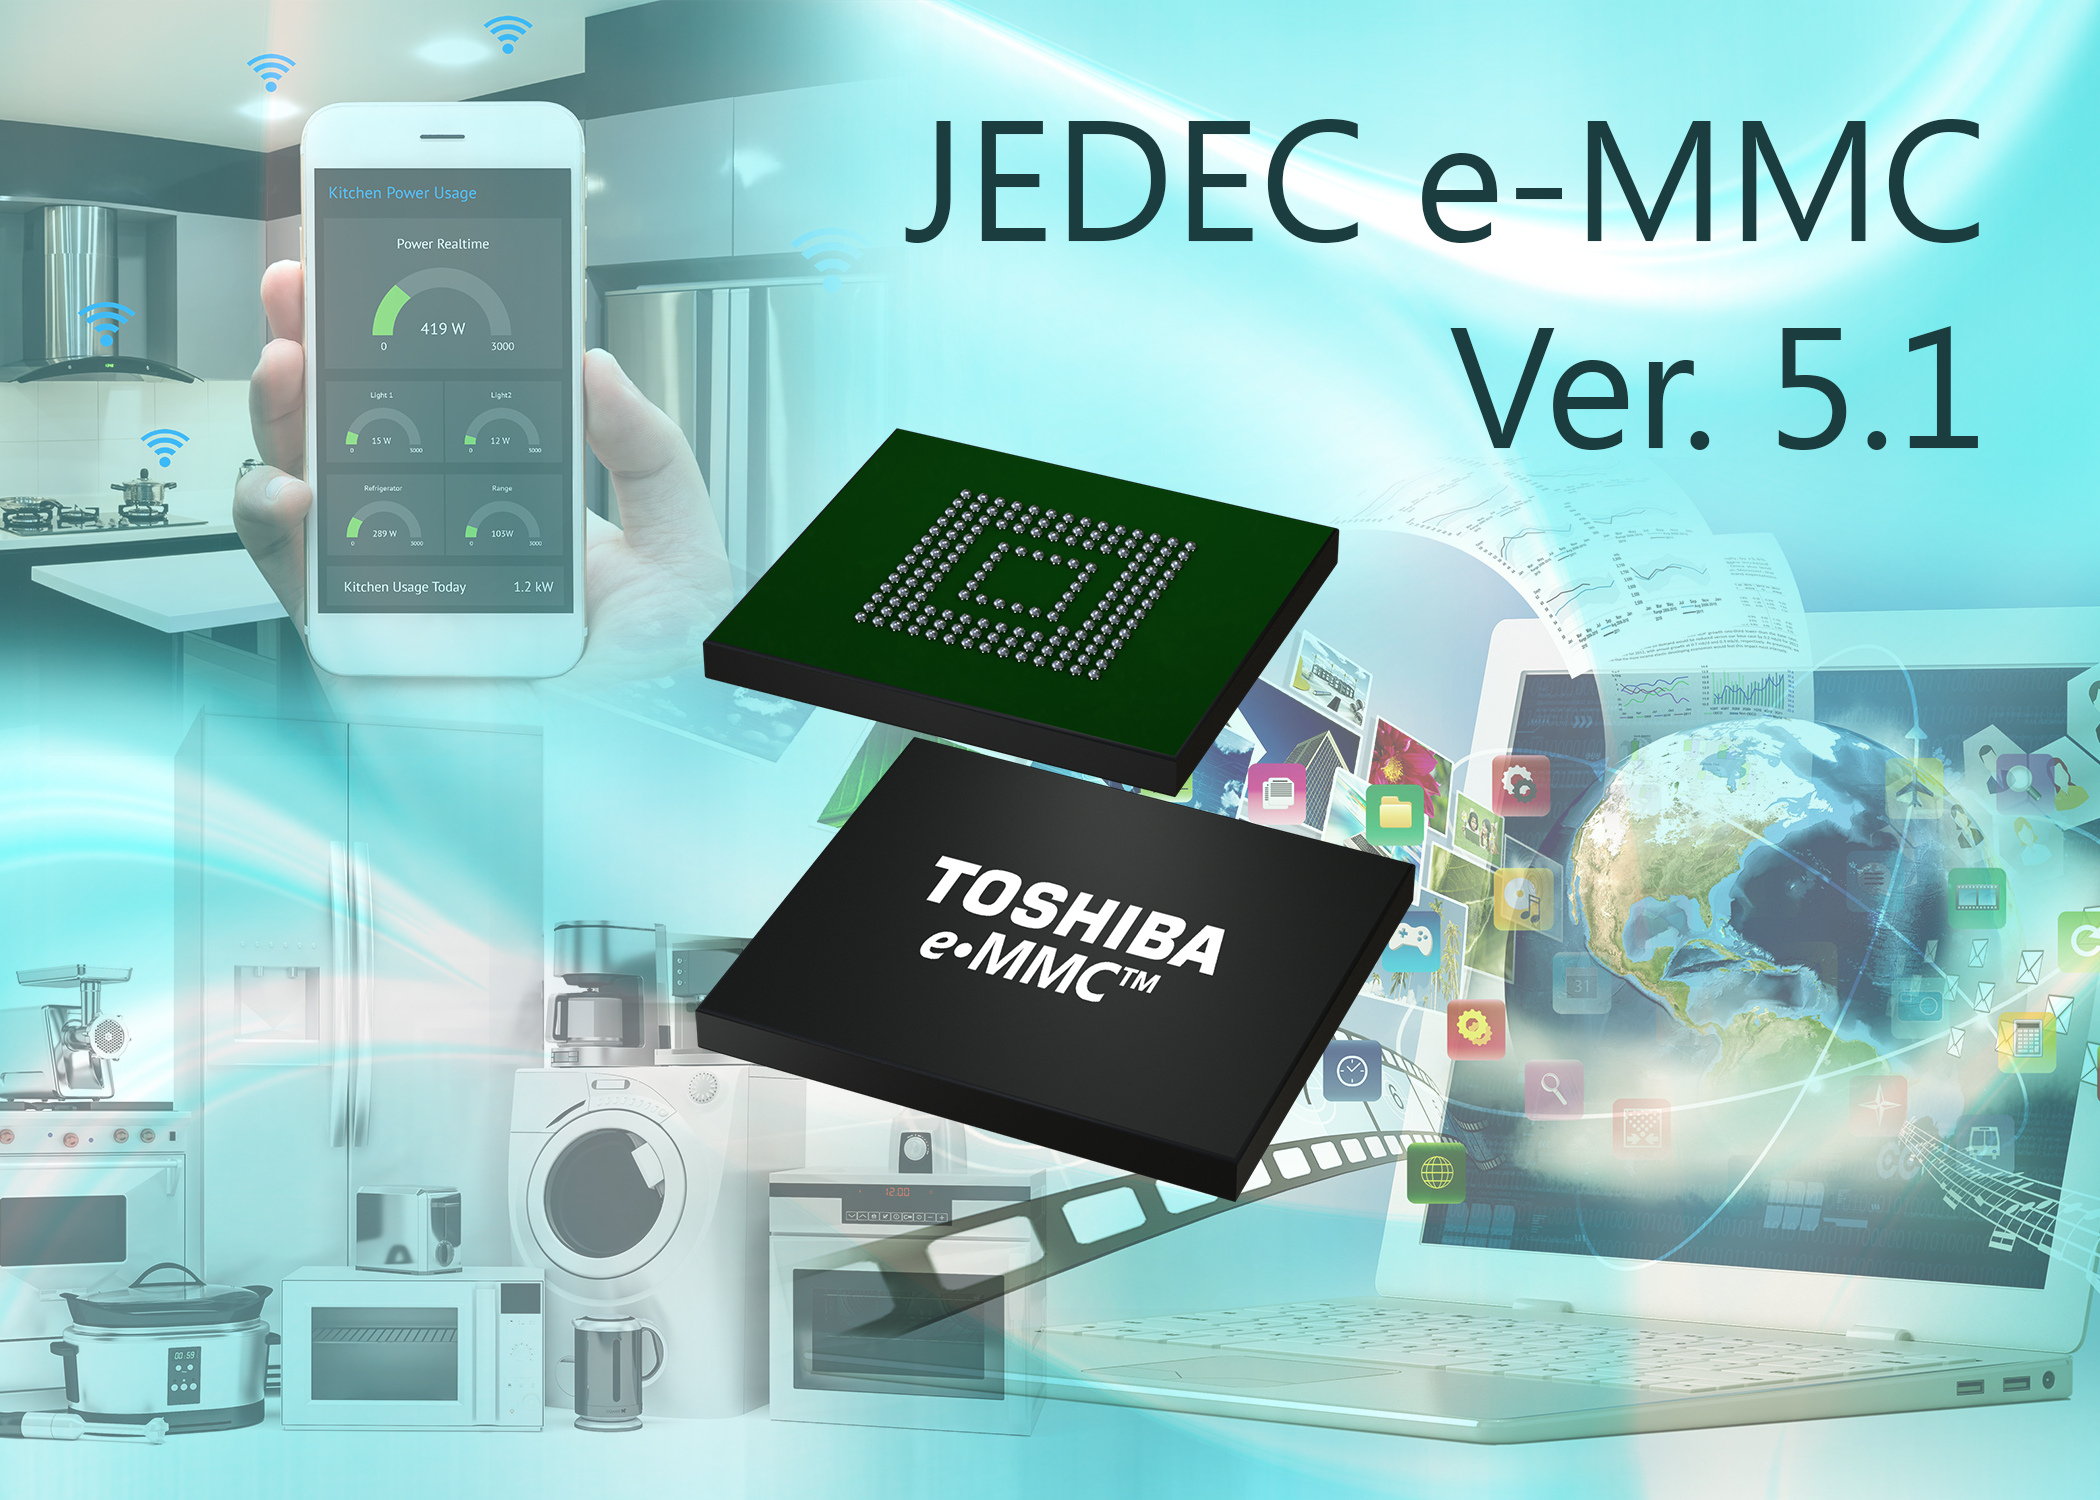 Toshiba JEDEC e-MMC Ver. 5.1